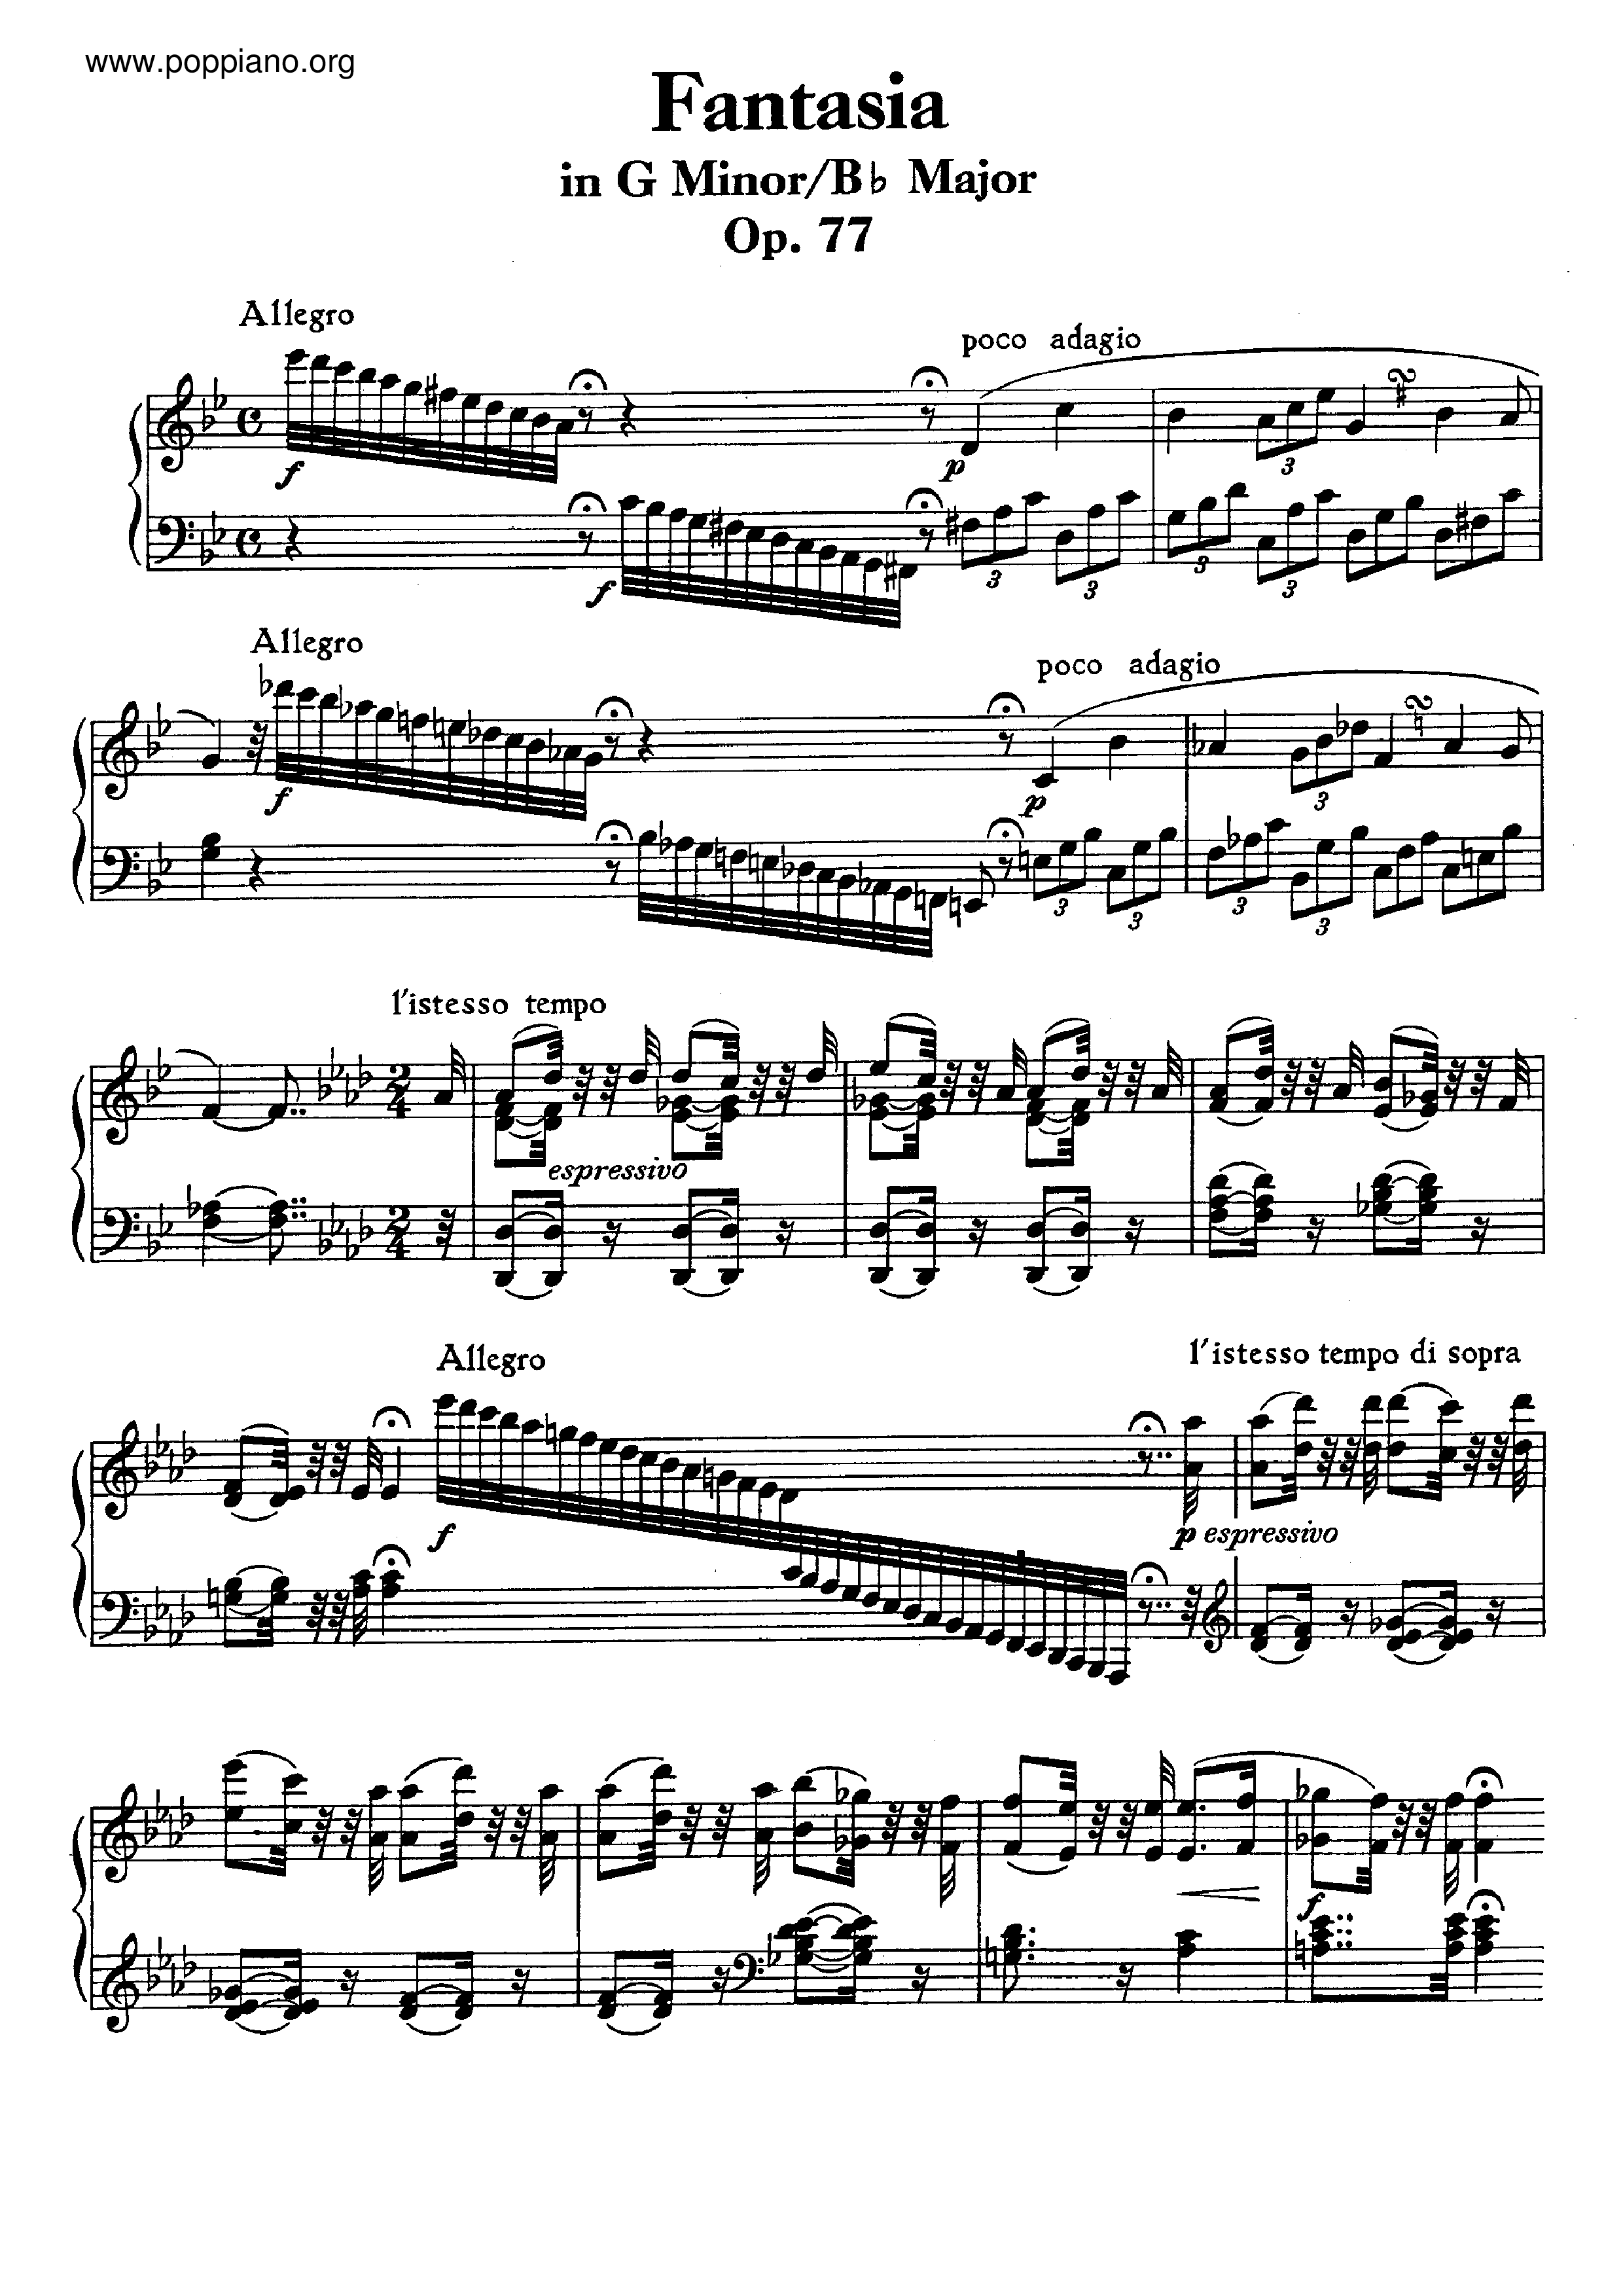 Fantasia in G Minor / Bb Major, Op. 77 Score